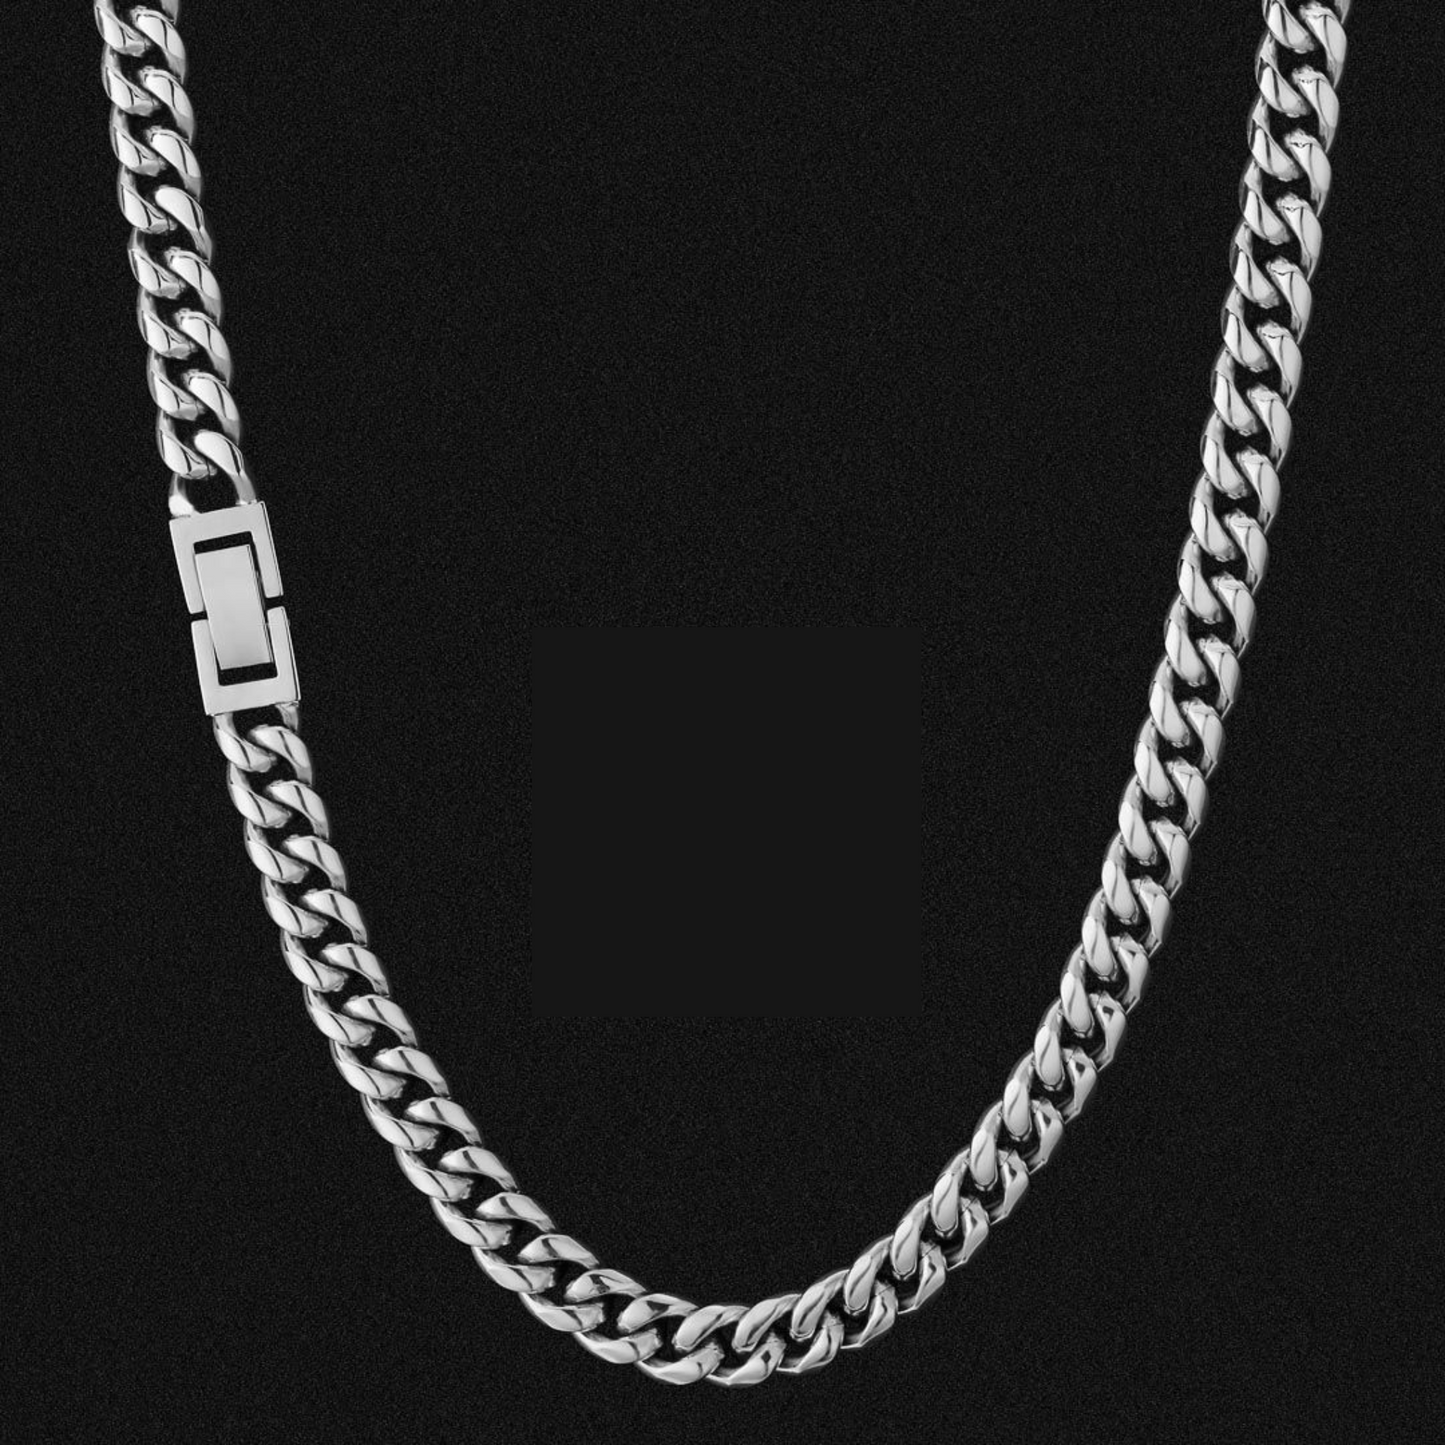 Cuban Chain (Silver) 8mm